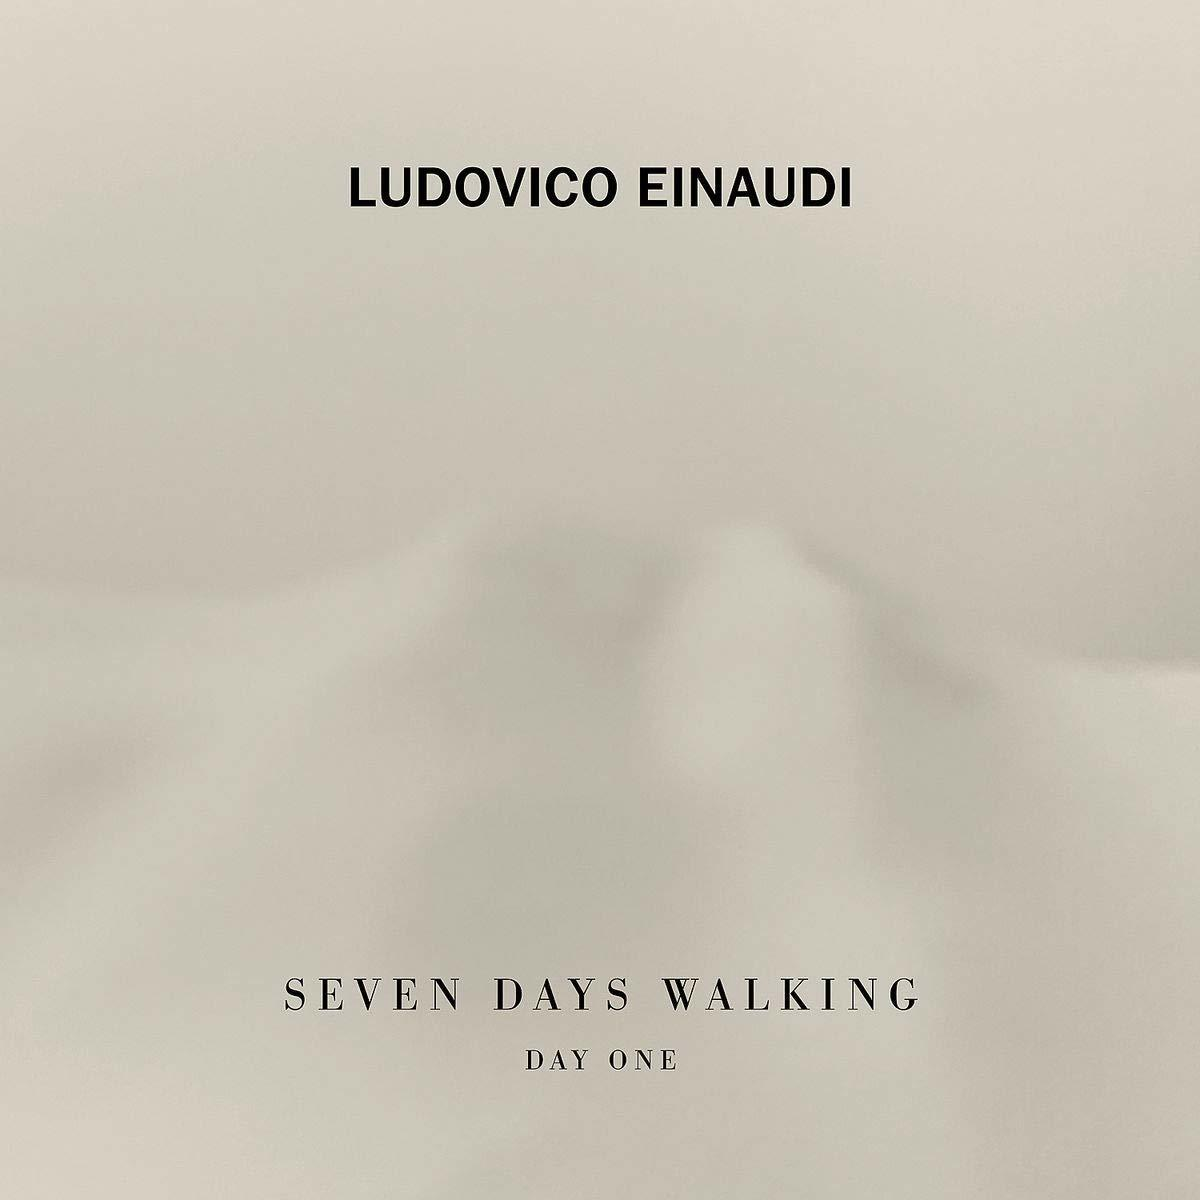 Ludovico Einaudi - SEVEN (Vinyl) DAY 1 DAYS WALKING - 